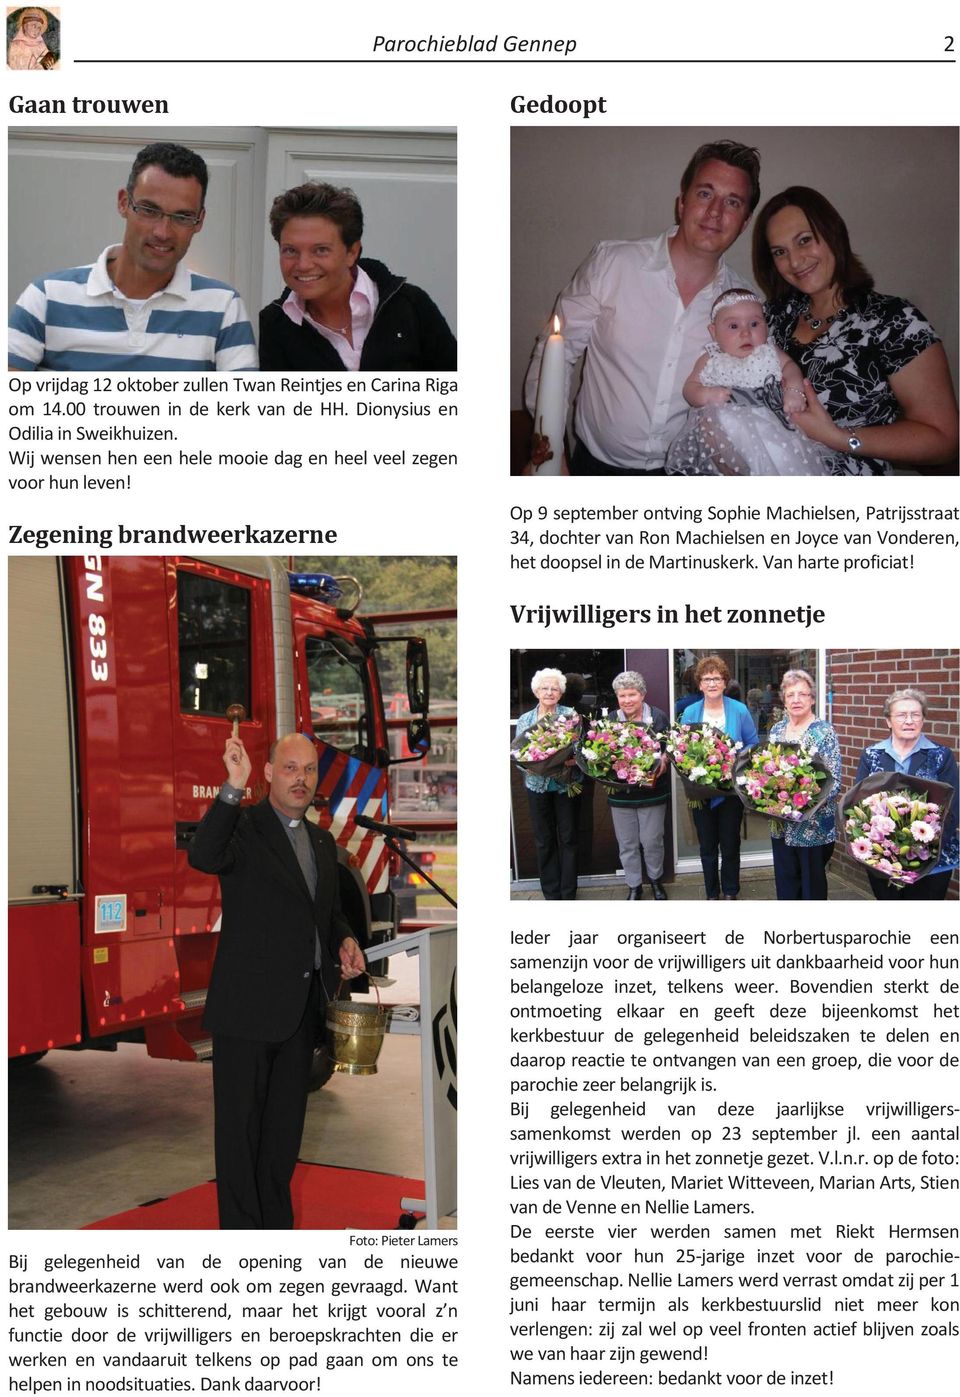 Zegening brandweerkazerne Op 9 september ontving Sophie Machielsen, Patrijsstraat 34, dochter van Ron Machielsen en Joyce van Vonderen, het doopsel in de Martinuskerk. Van harte proficiat!